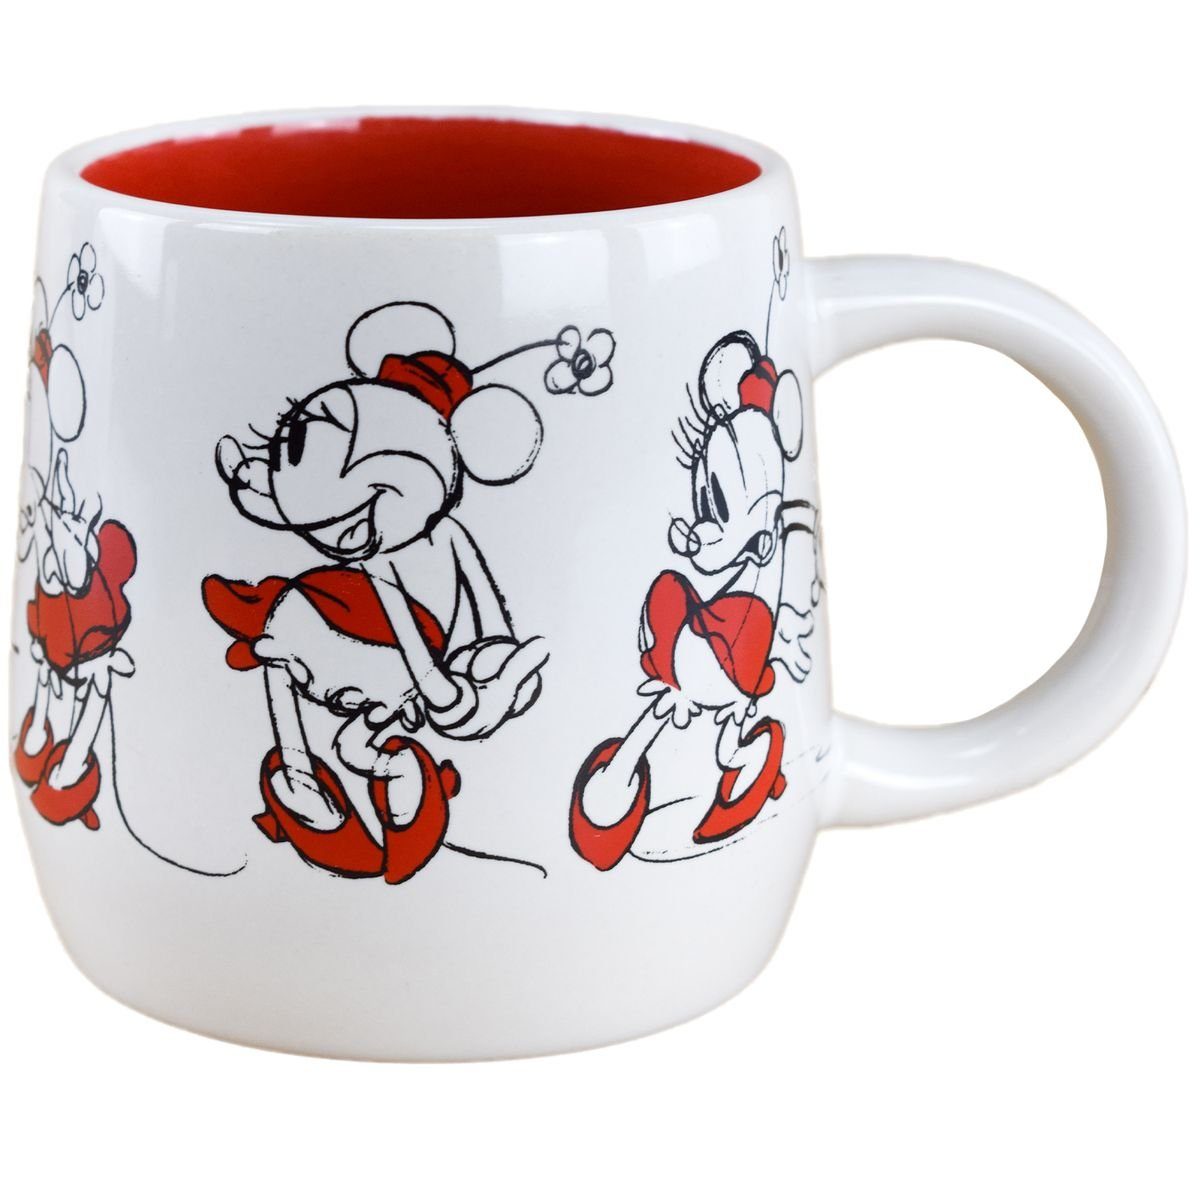 Stor Tasse Disney Minnie Mouse als Skizze in Weiß / Rot Kaffeetasse ca. 8,7x9 cm, Keramik, authentisches Design